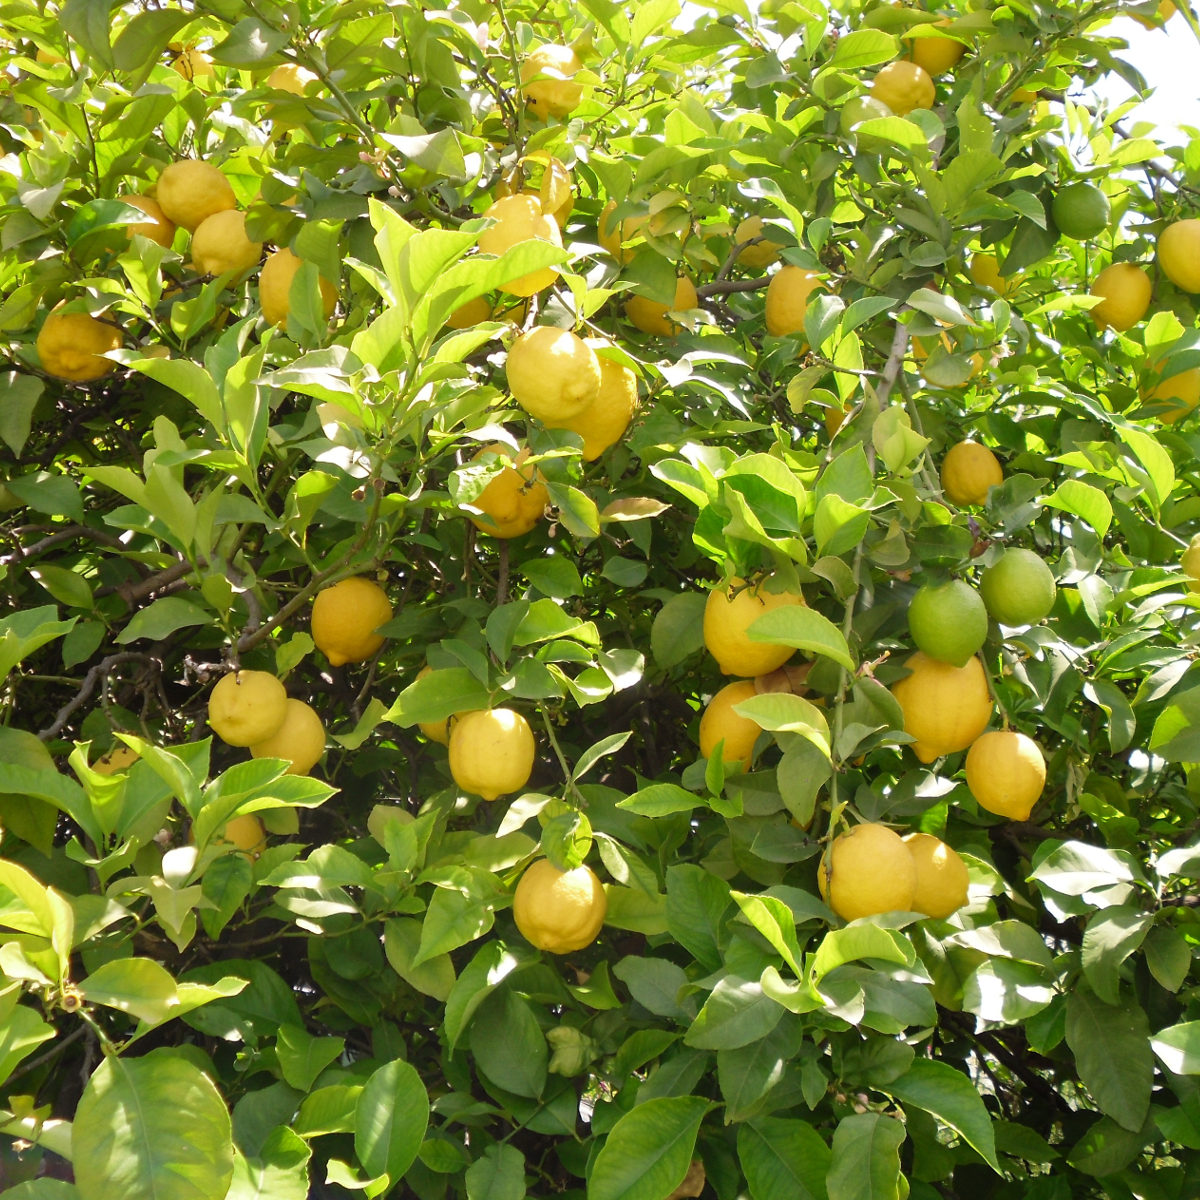 Citronnier des 4 saisons - Vente en ligne de plants de Citronnier